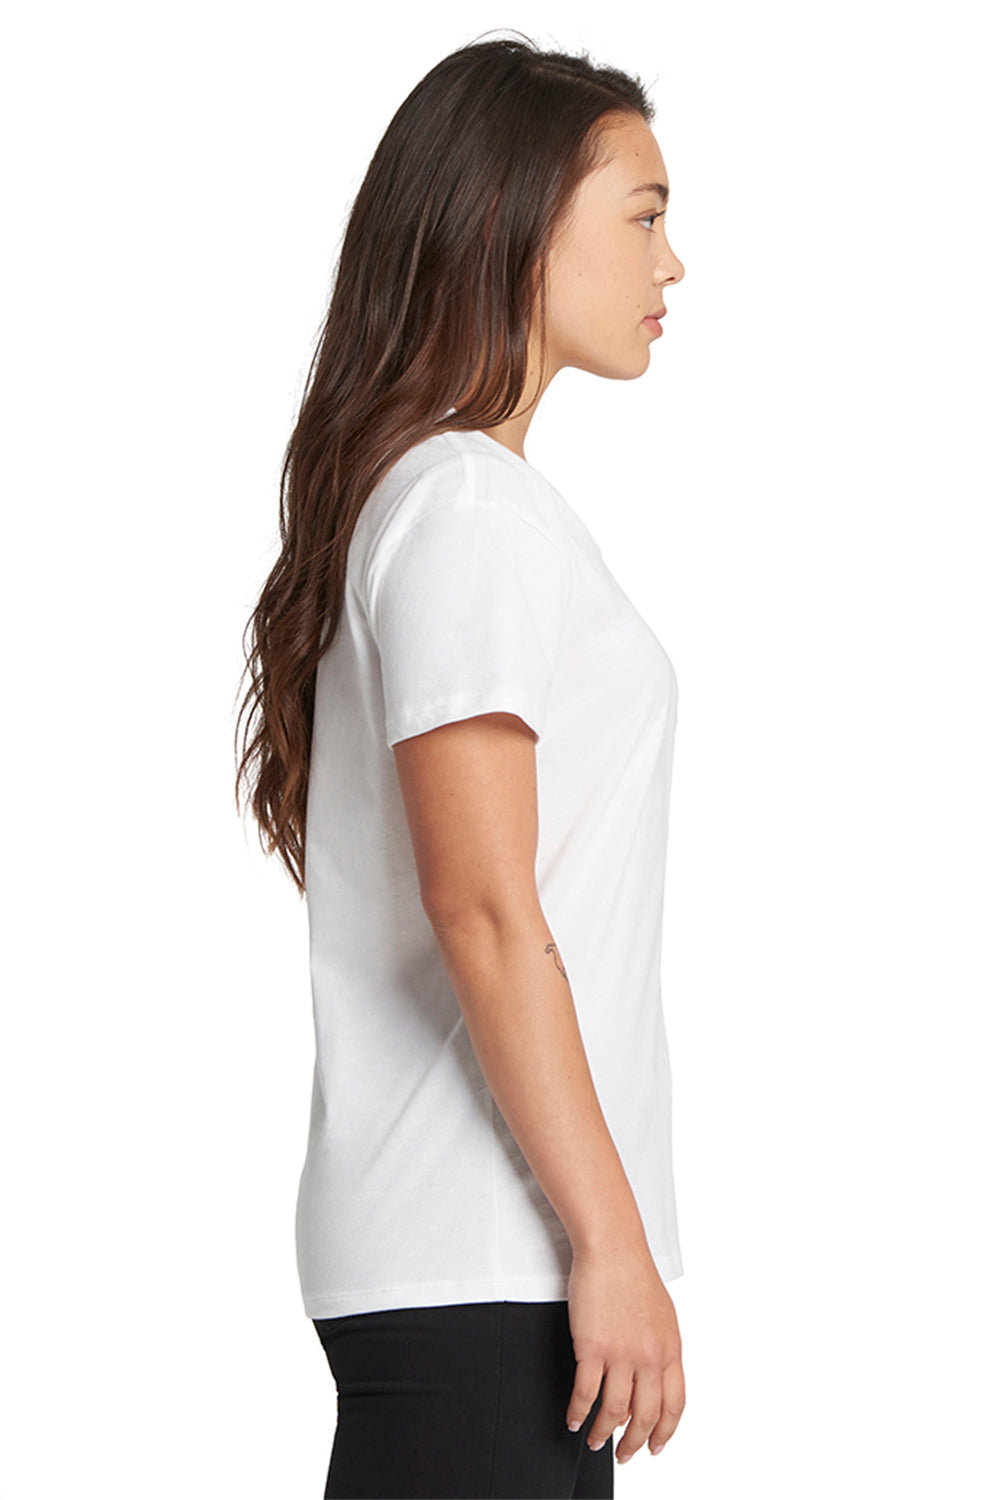 Next Level 3940 Womens Relaxed Short Sleeve V-Neck T-Shirt White Side